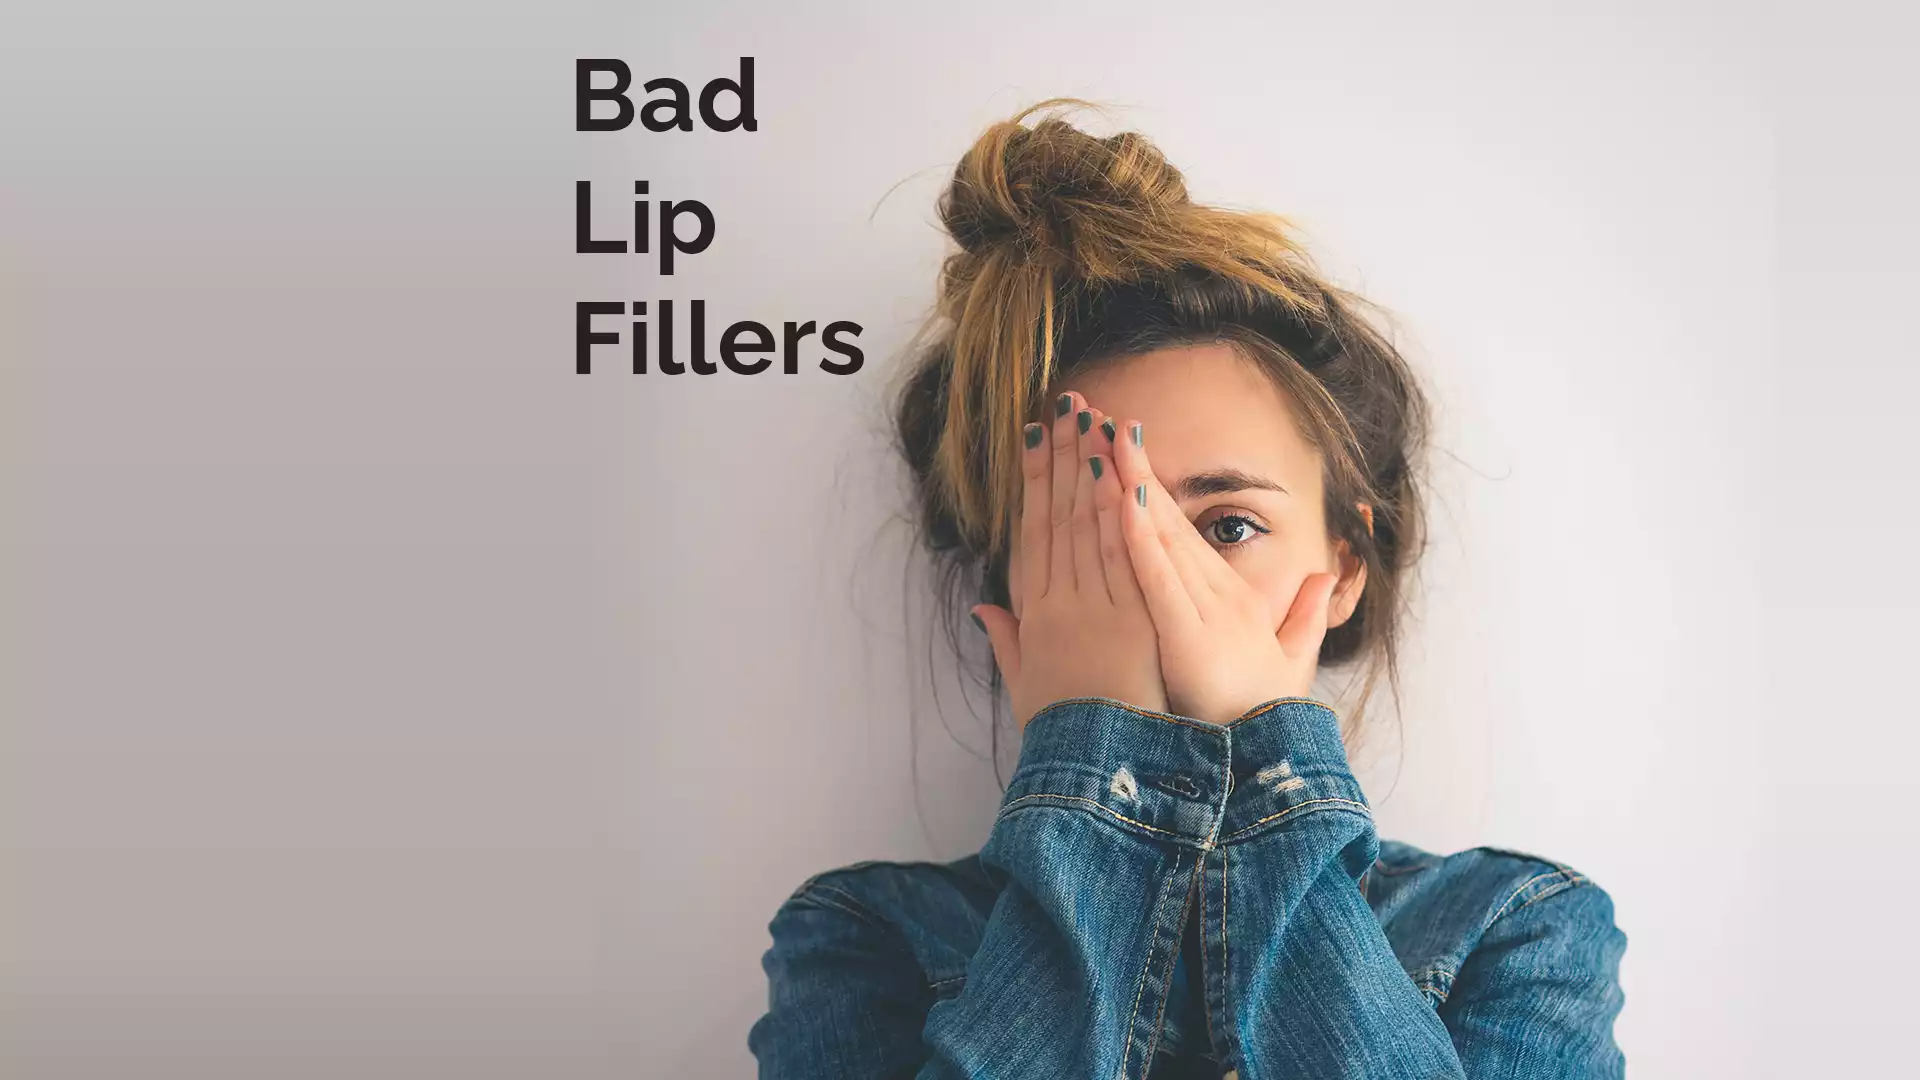 Bad Lip Fillers